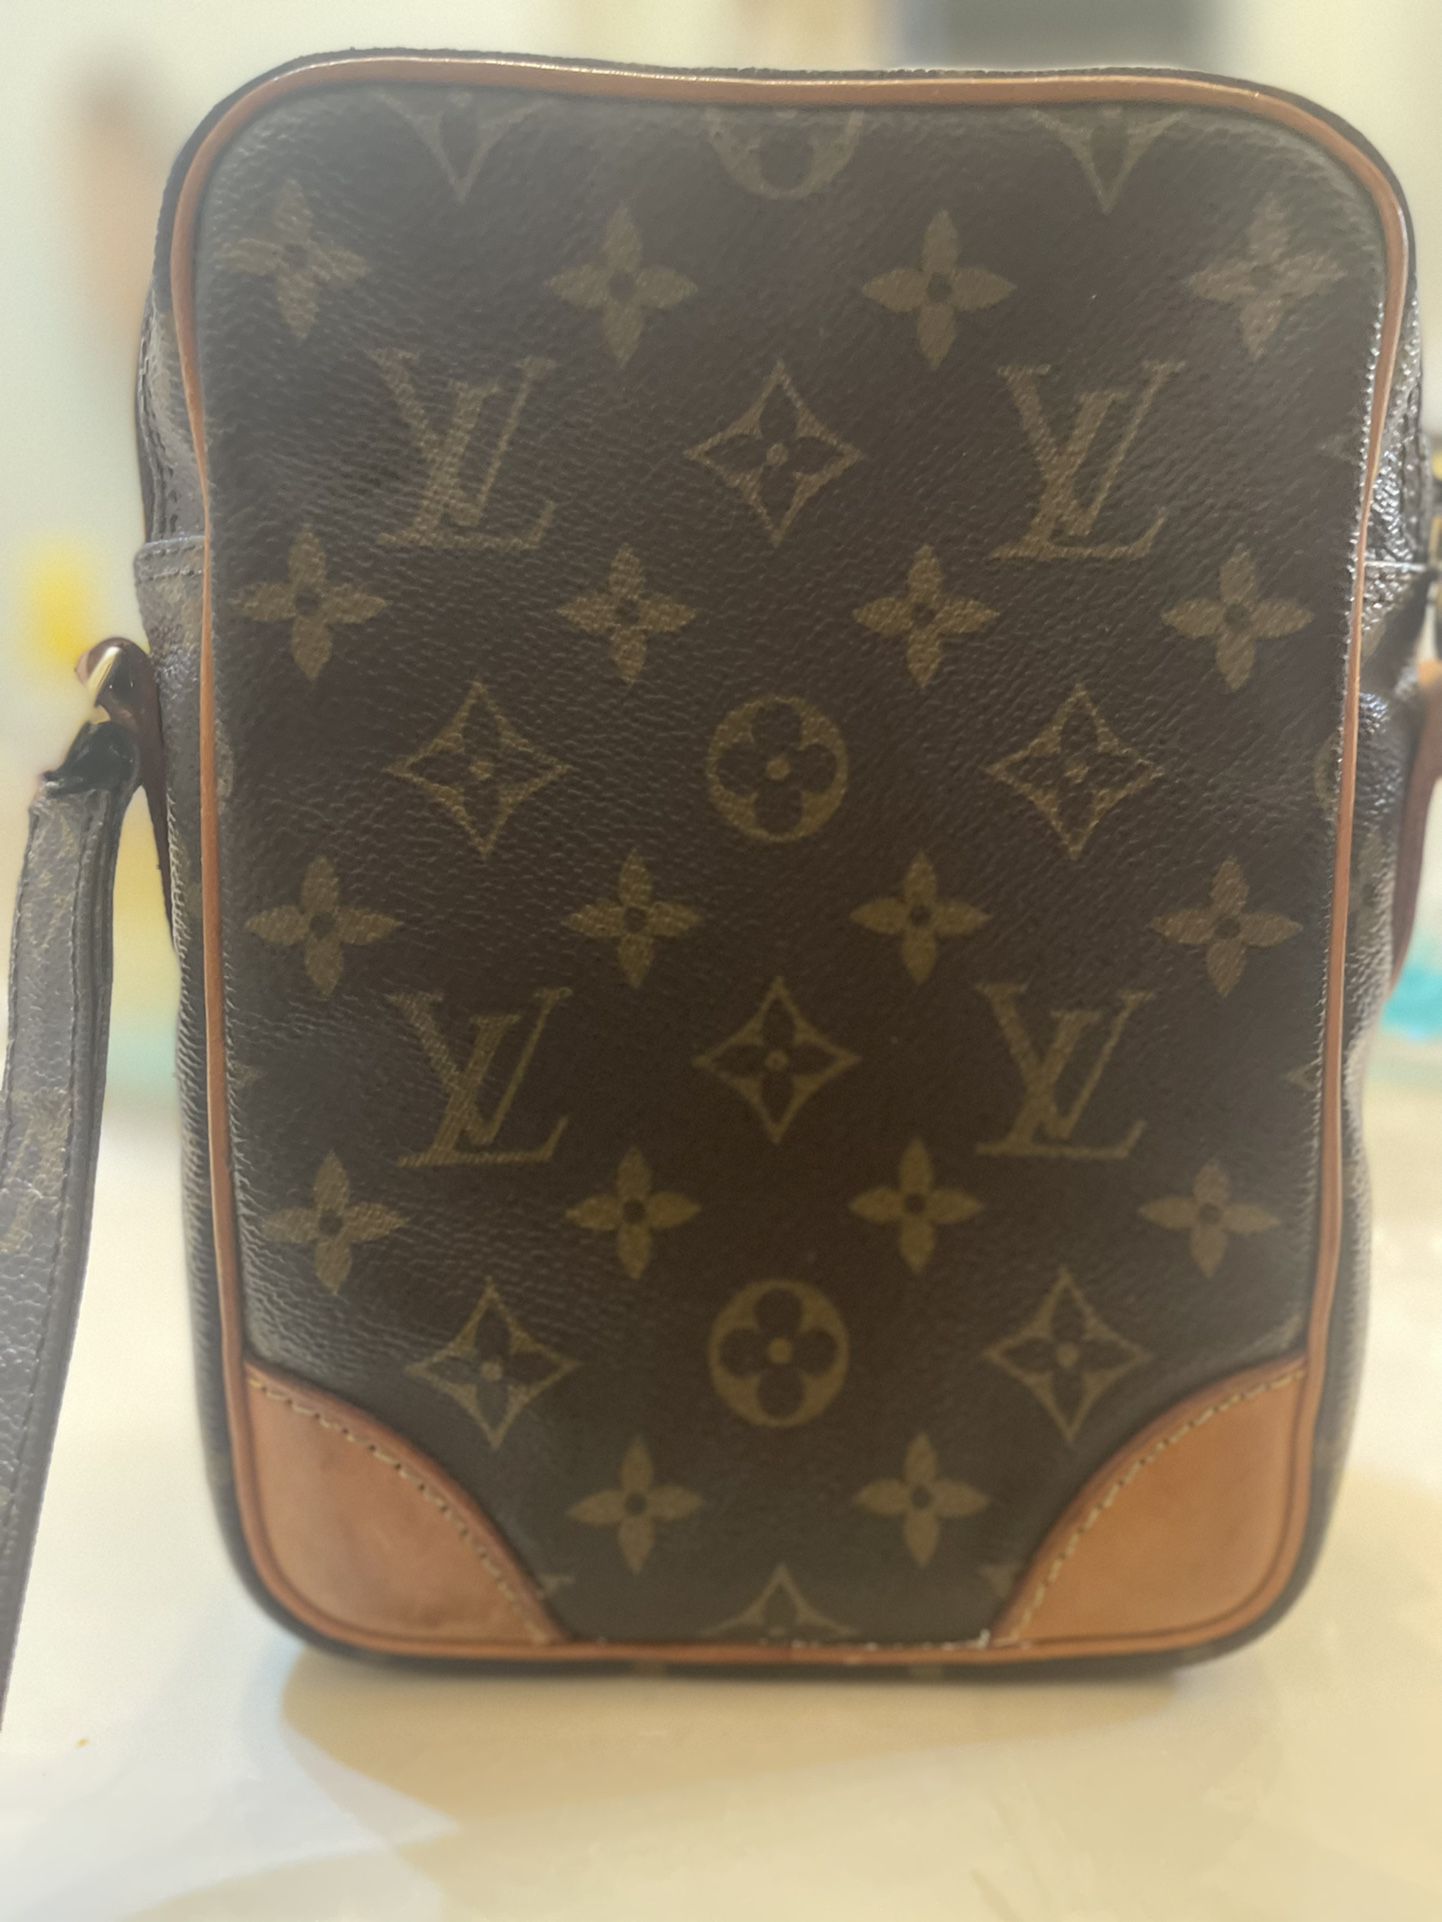 Vintage(60's/70's) Louis Vuitton Monogram Triangle Bag for Sale in  Marietta, GA - OfferUp